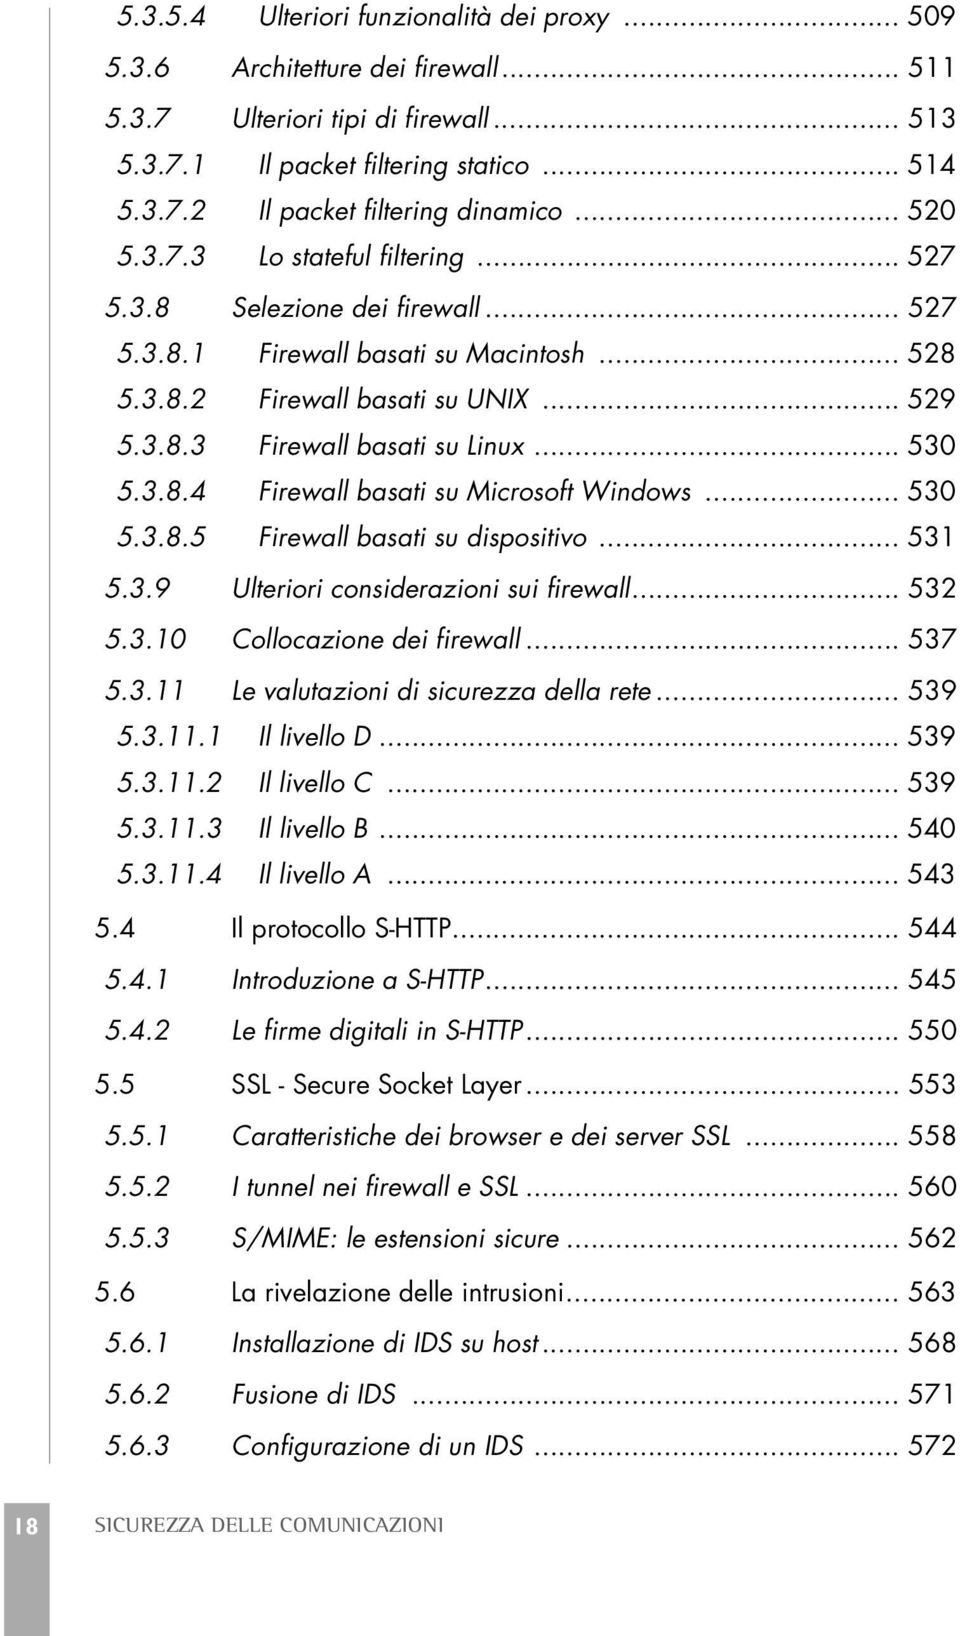 .. 530 5.3.8.4 Firewall basati su Microsoft Windows... 530 5.3.8.5 Firewall basati su dispositivo... 531 5.3.9 Ulteriori considerazioni sui firewall... 532 5.3.10 Collocazione dei firewall... 537 5.3.11 Le valutazioni di sicurezza della rete.